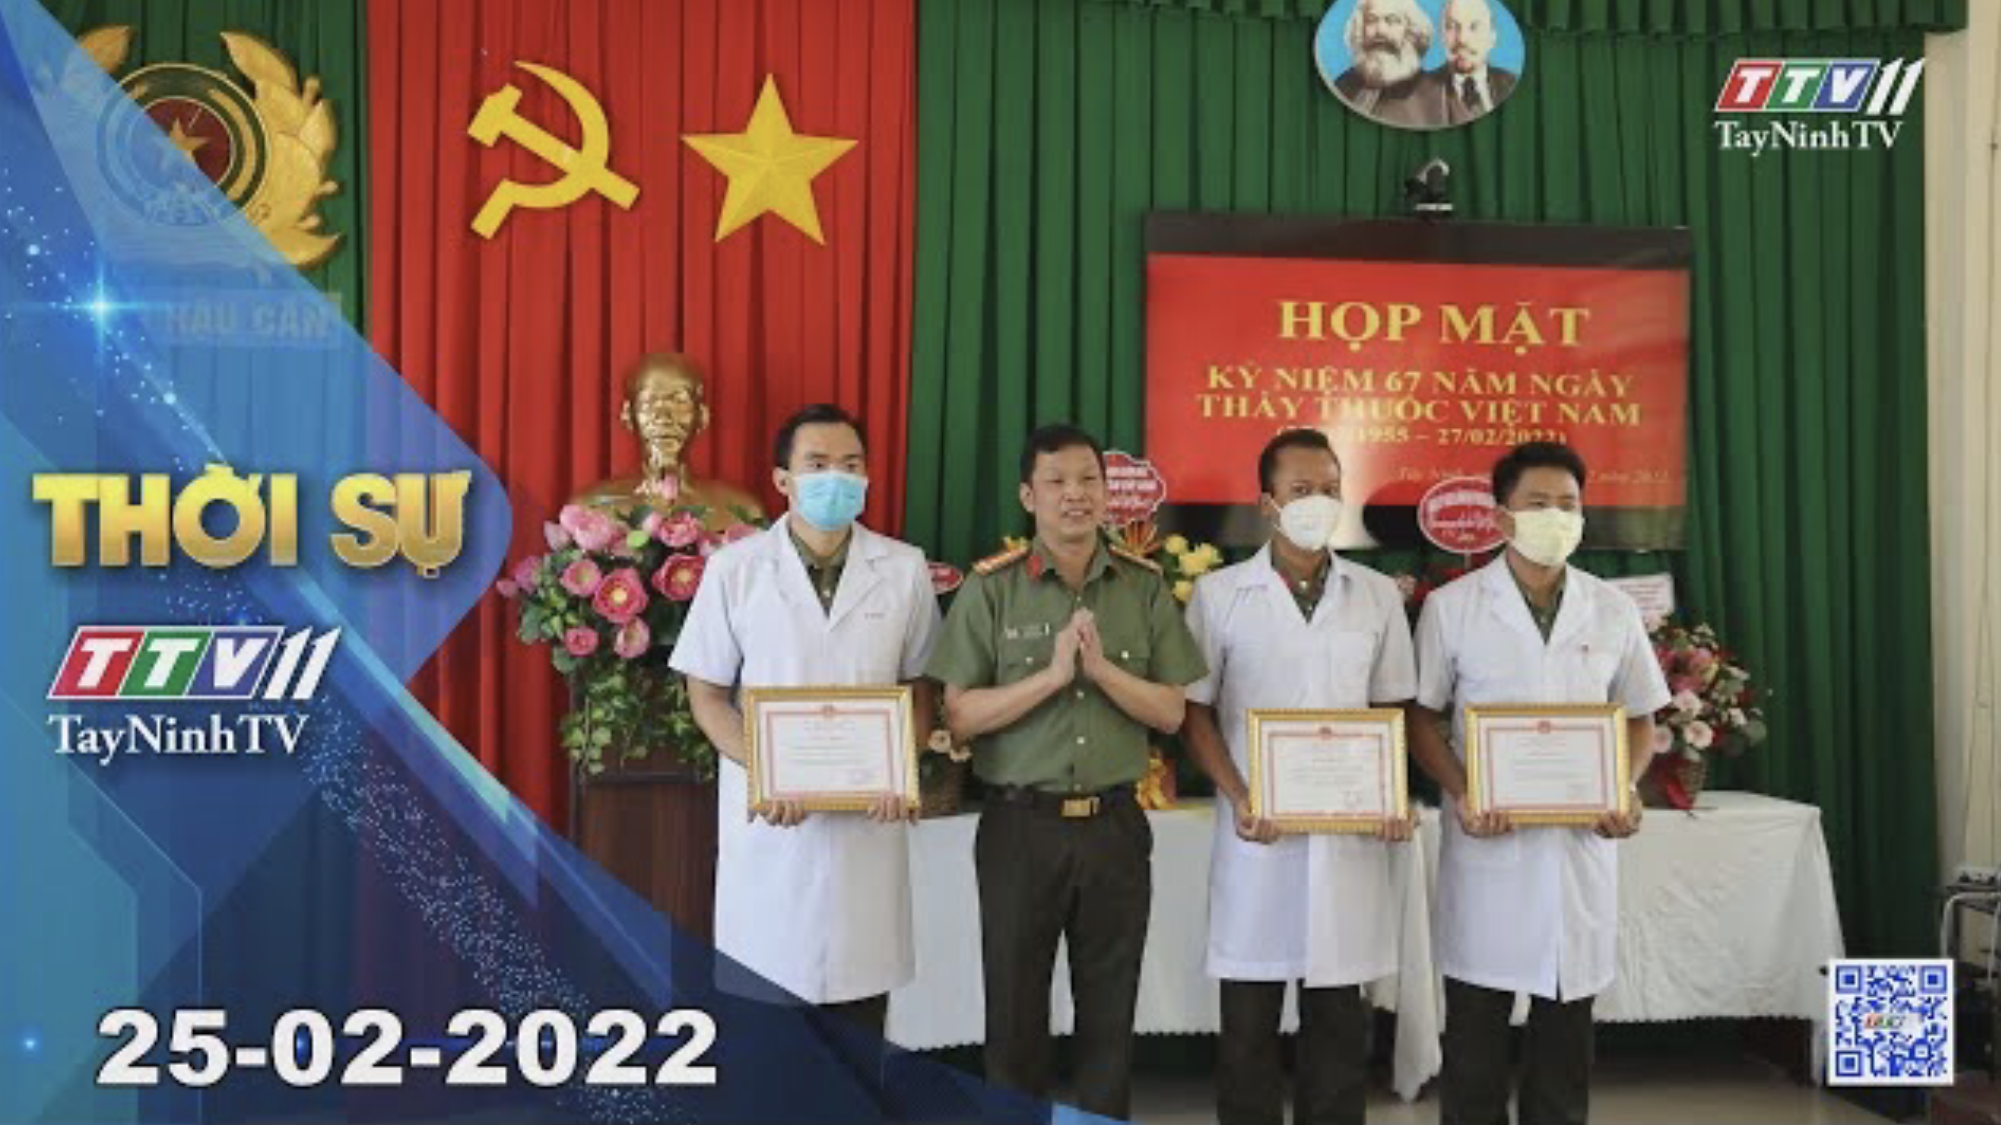 Thời sự Tây Ninh 25-02-2022 | Tin tức hôm nay | TayNinhTV